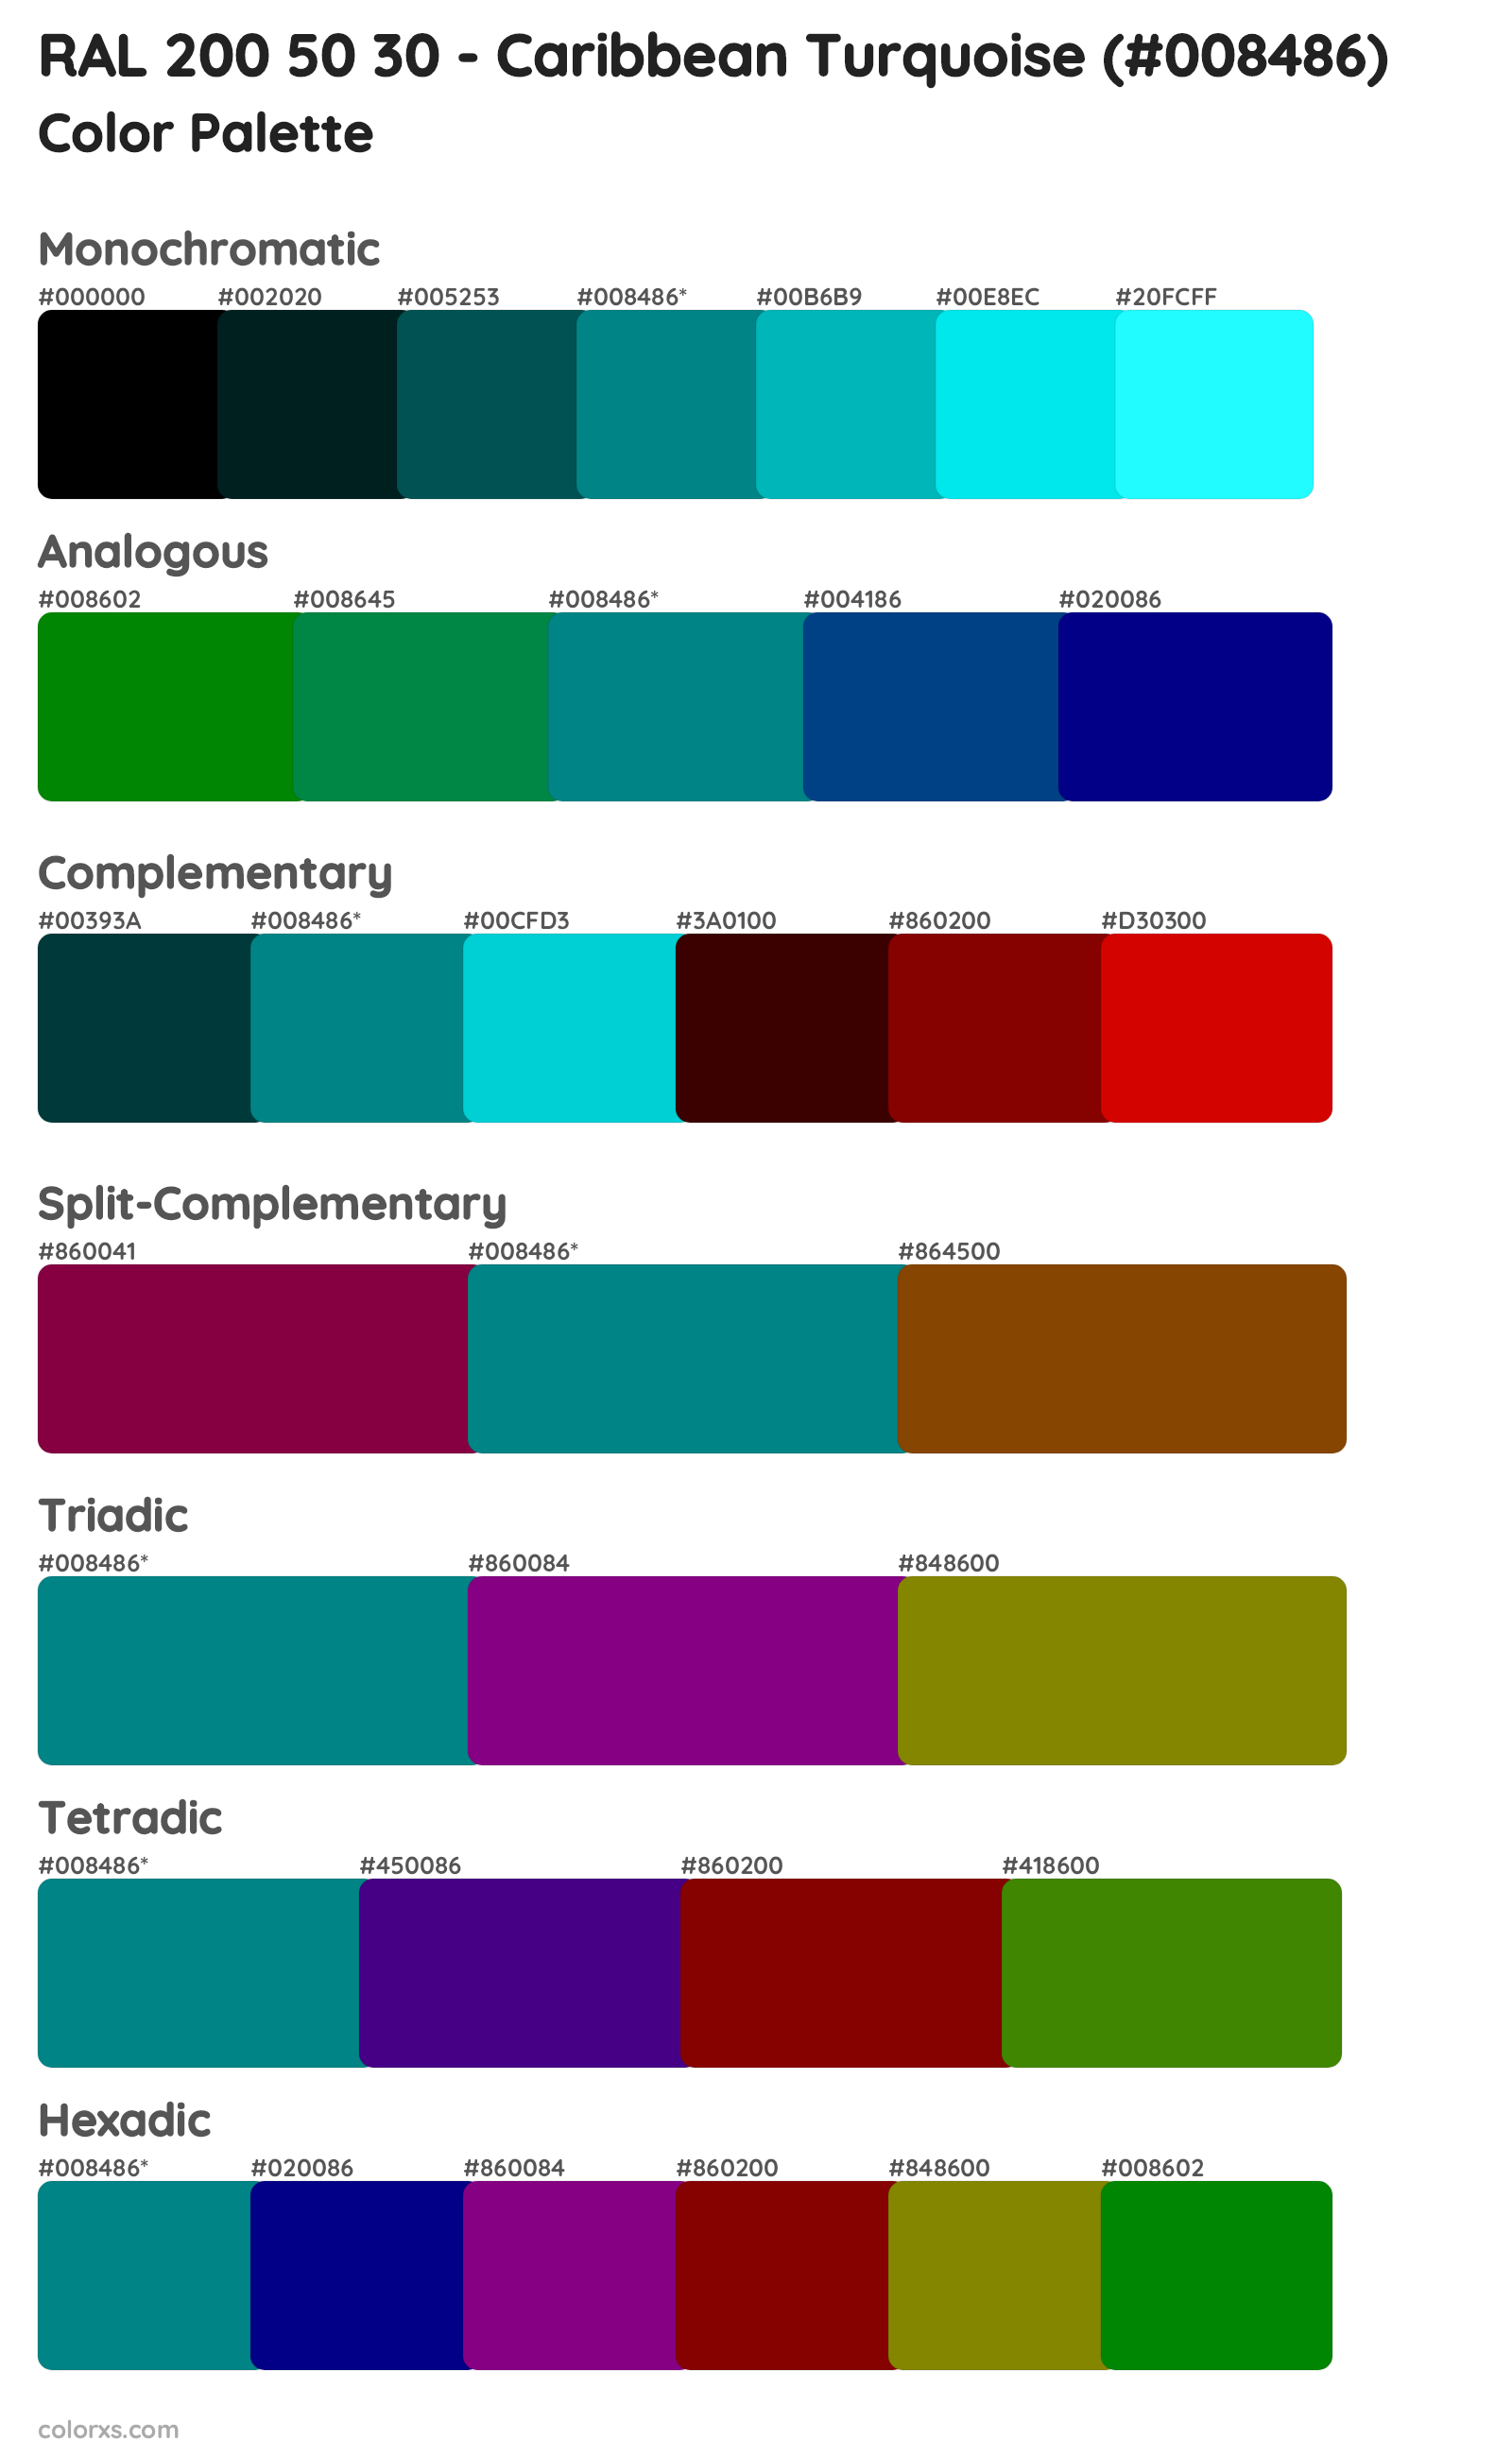 RAL 200 50 30 - Caribbean Turquoise Color Scheme Palettes